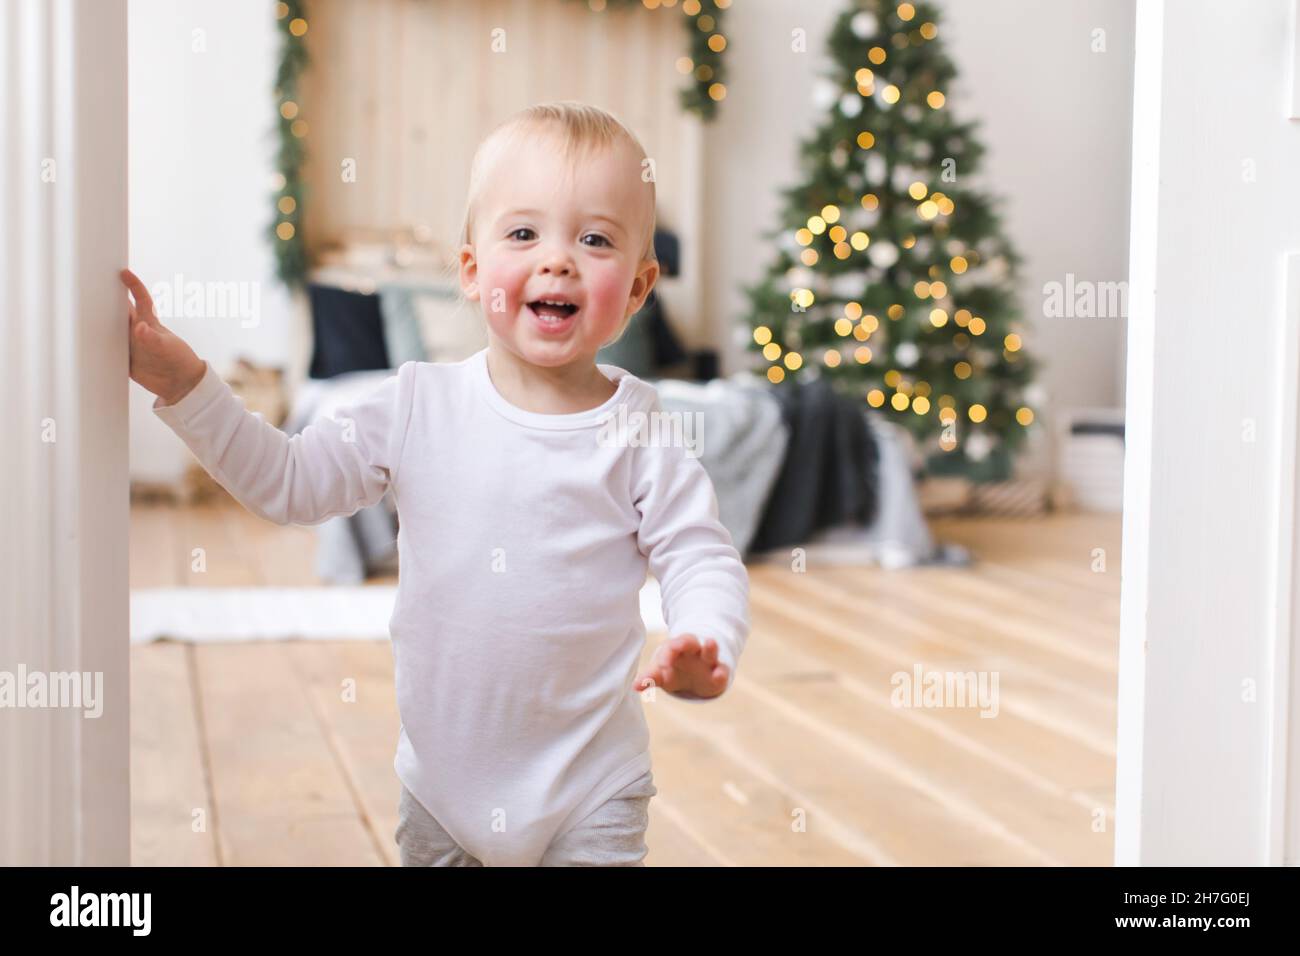 Adorabile bambino in piedi in porte guardando la macchina fotografica sullo sfondo dell'albero di Natale in camera da letto. Foto Stock